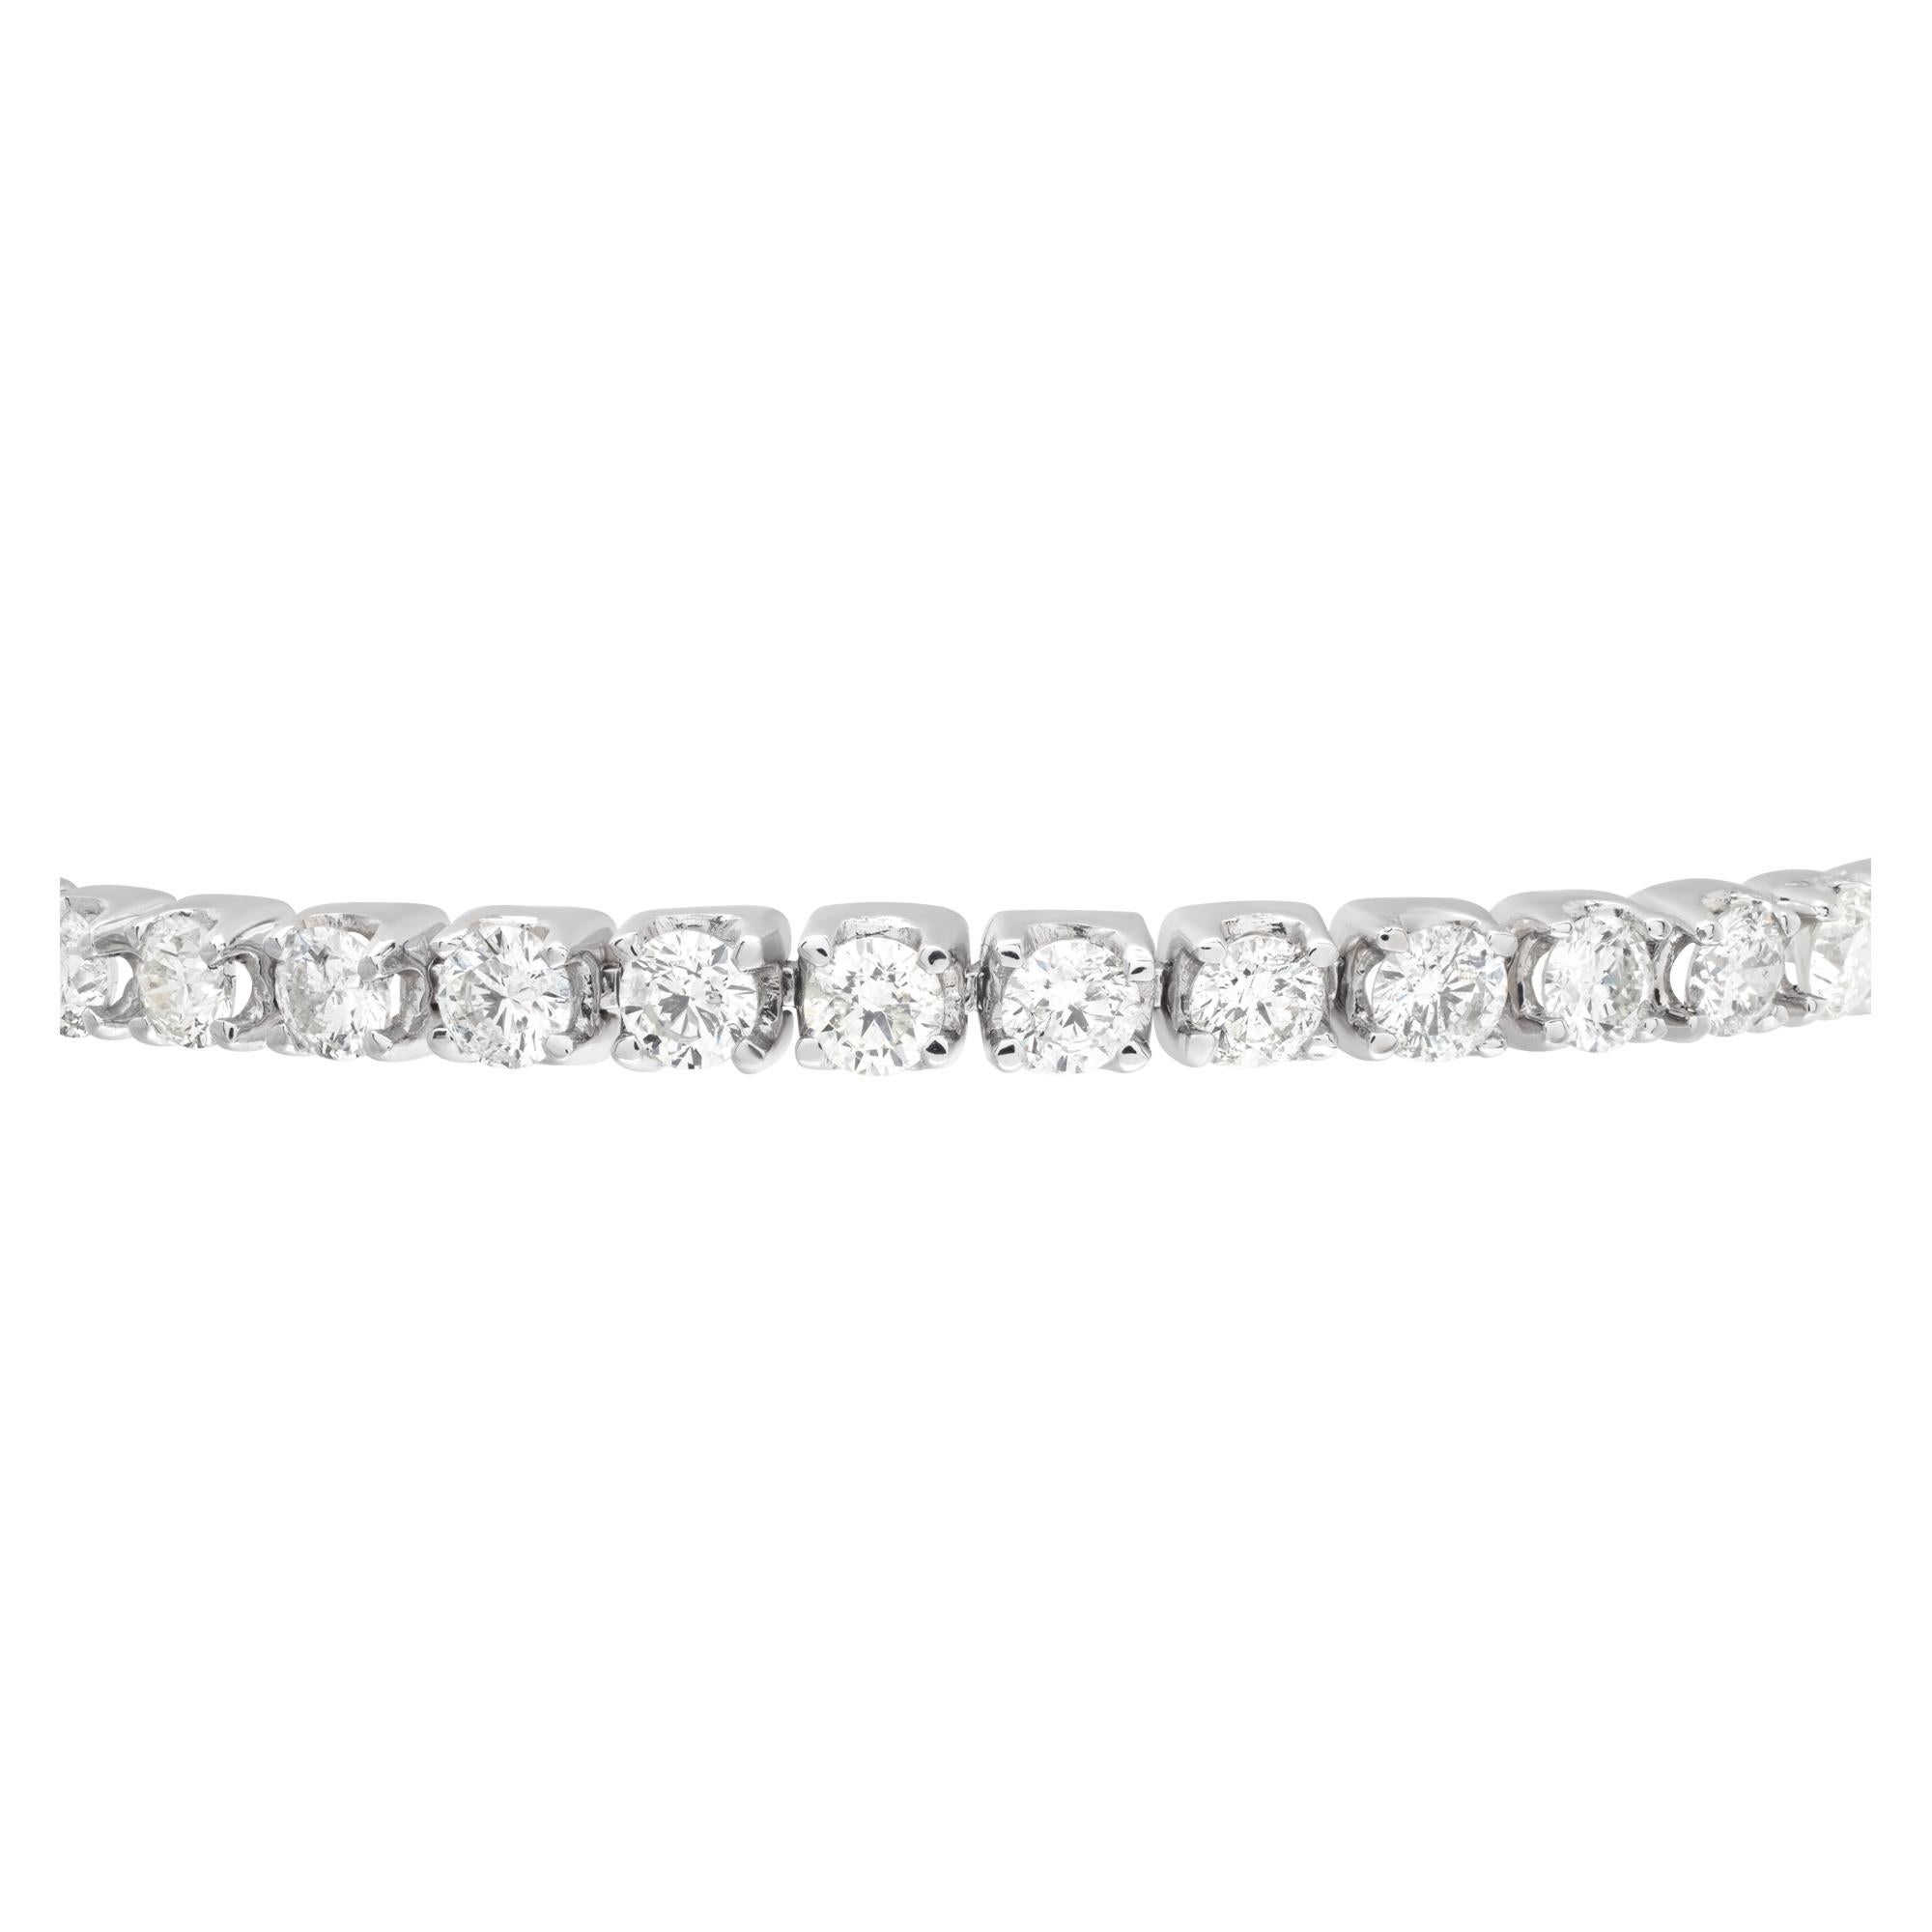 Bracelet étincelant de diamants en ligne avec environ 8,49 carats de diamants ronds brillants pleine taille sertis en or blanc 14K. Les diamants sont estimés de couleur H-I, pureté SI. Longueur 8 cm.